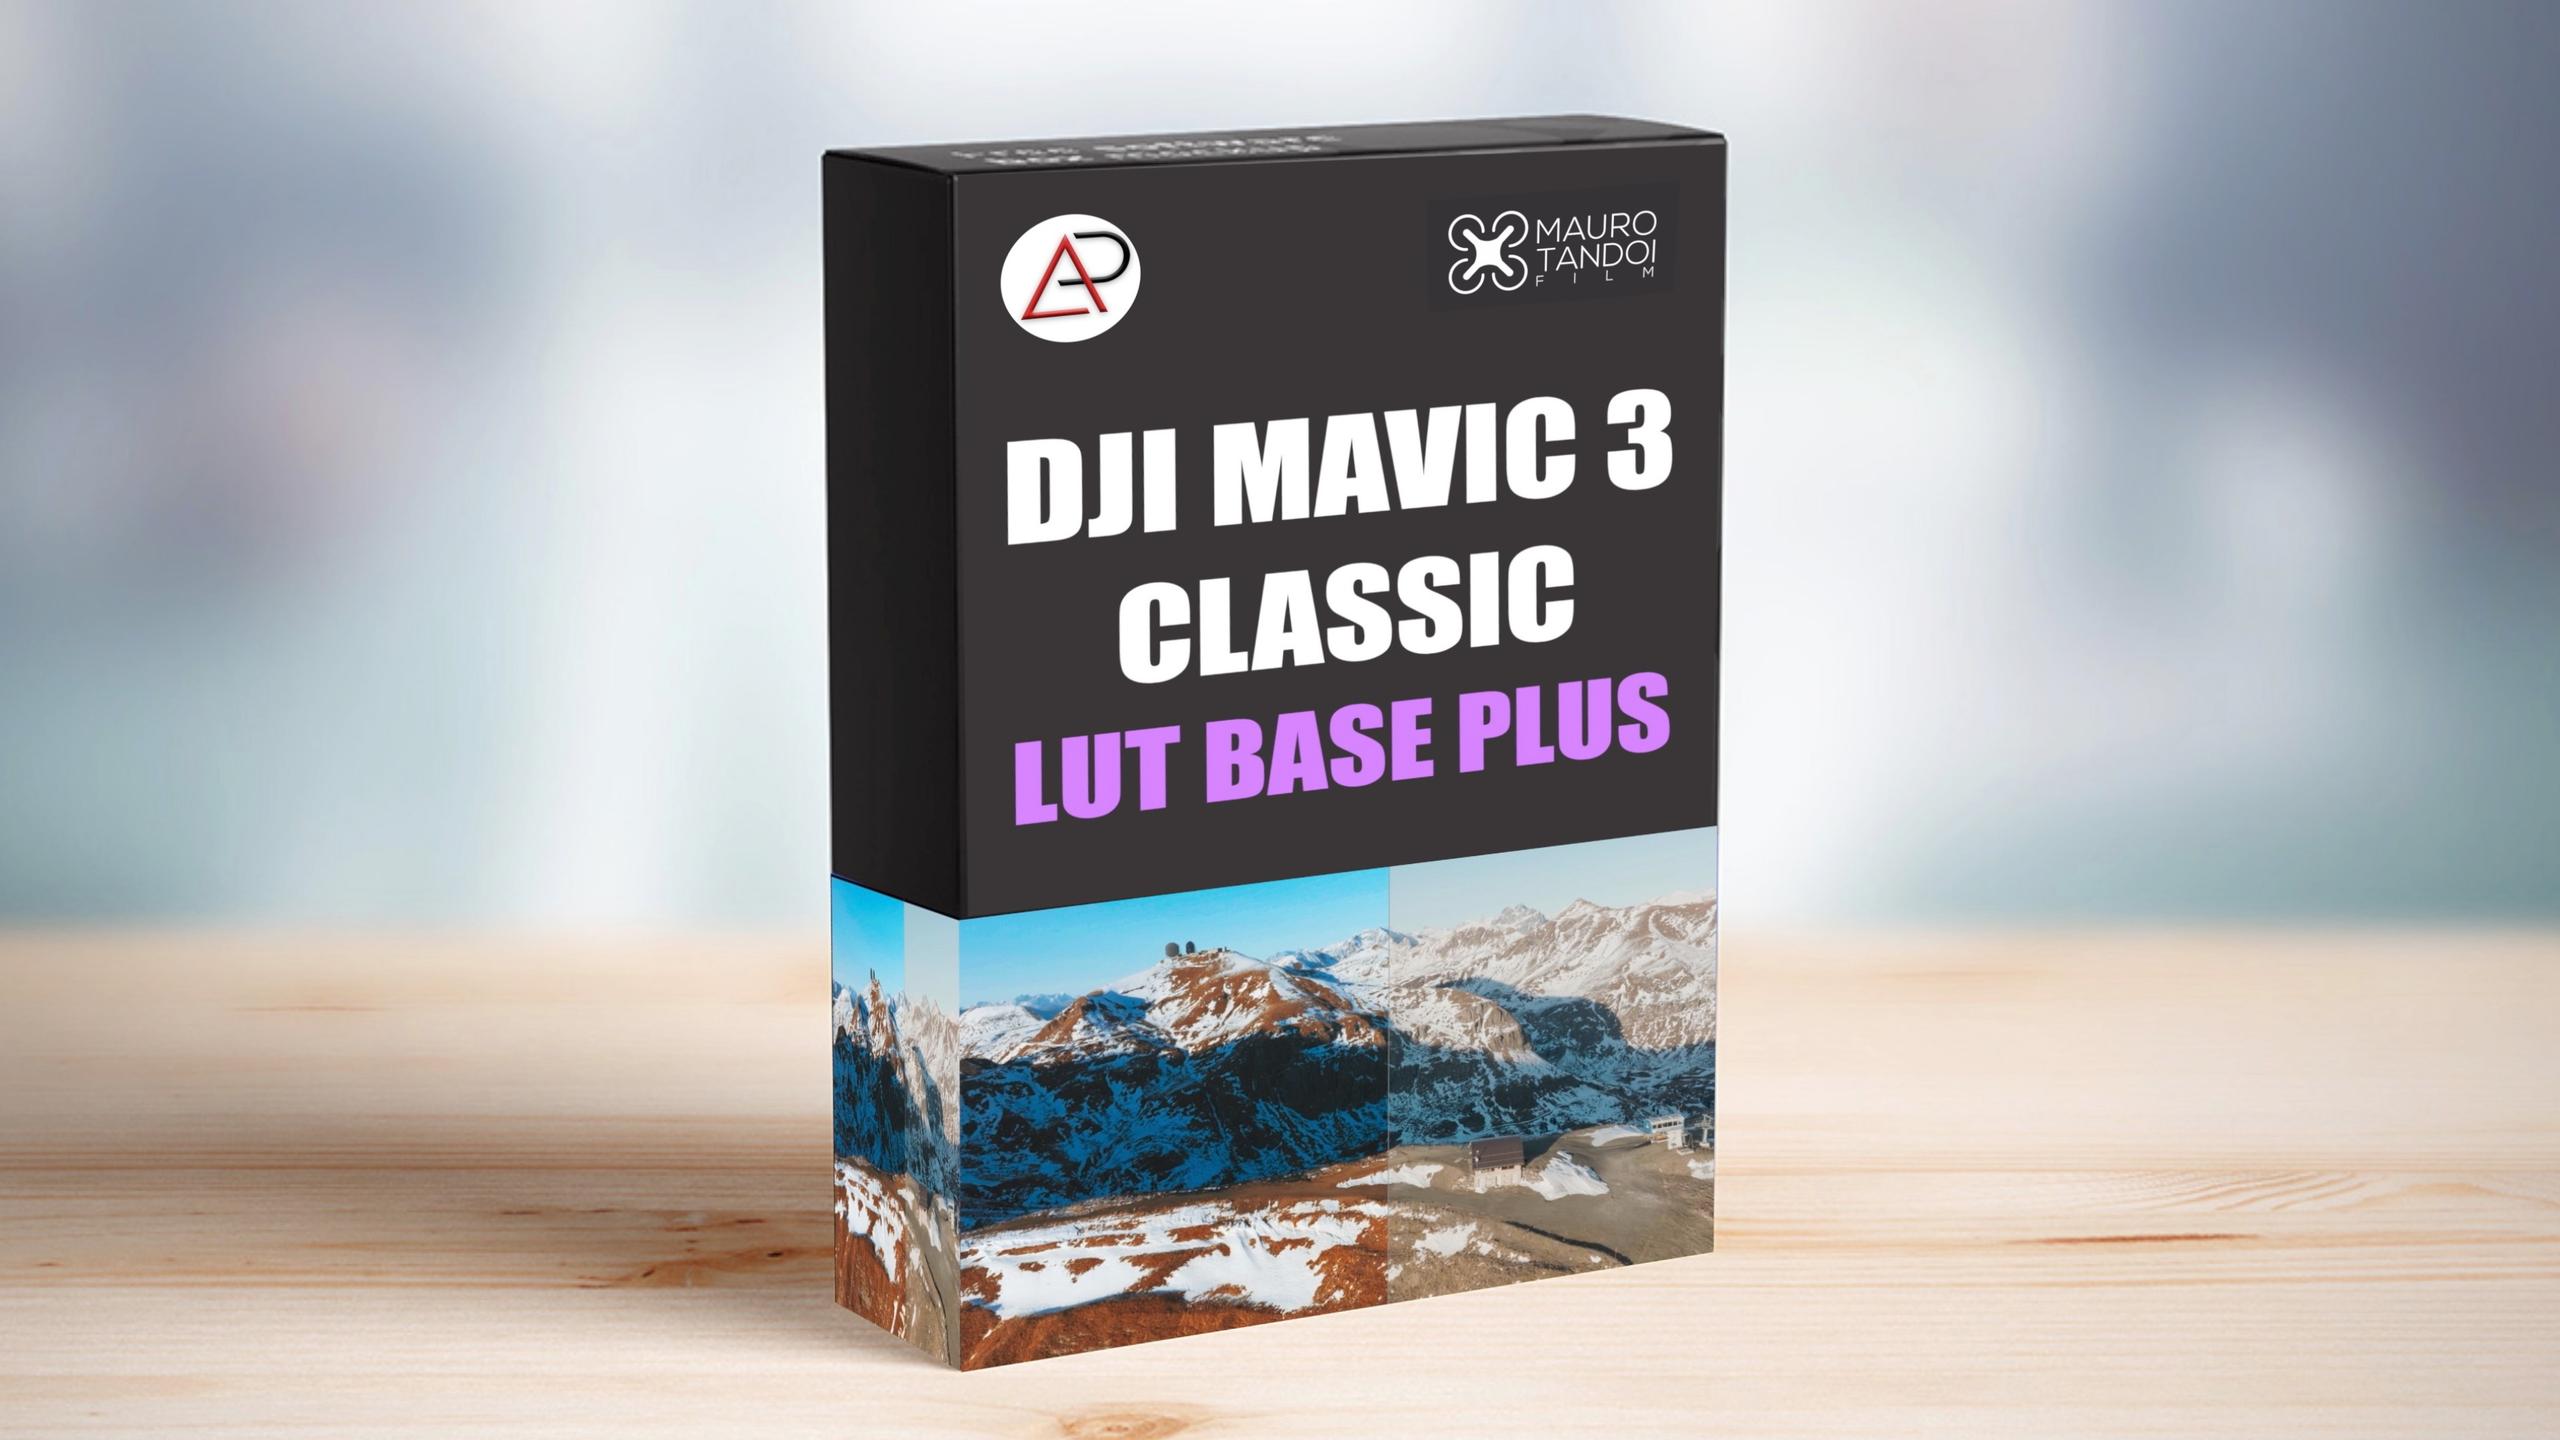 DJI MAVIC 3 CLASSIC LUT BASE PLUS